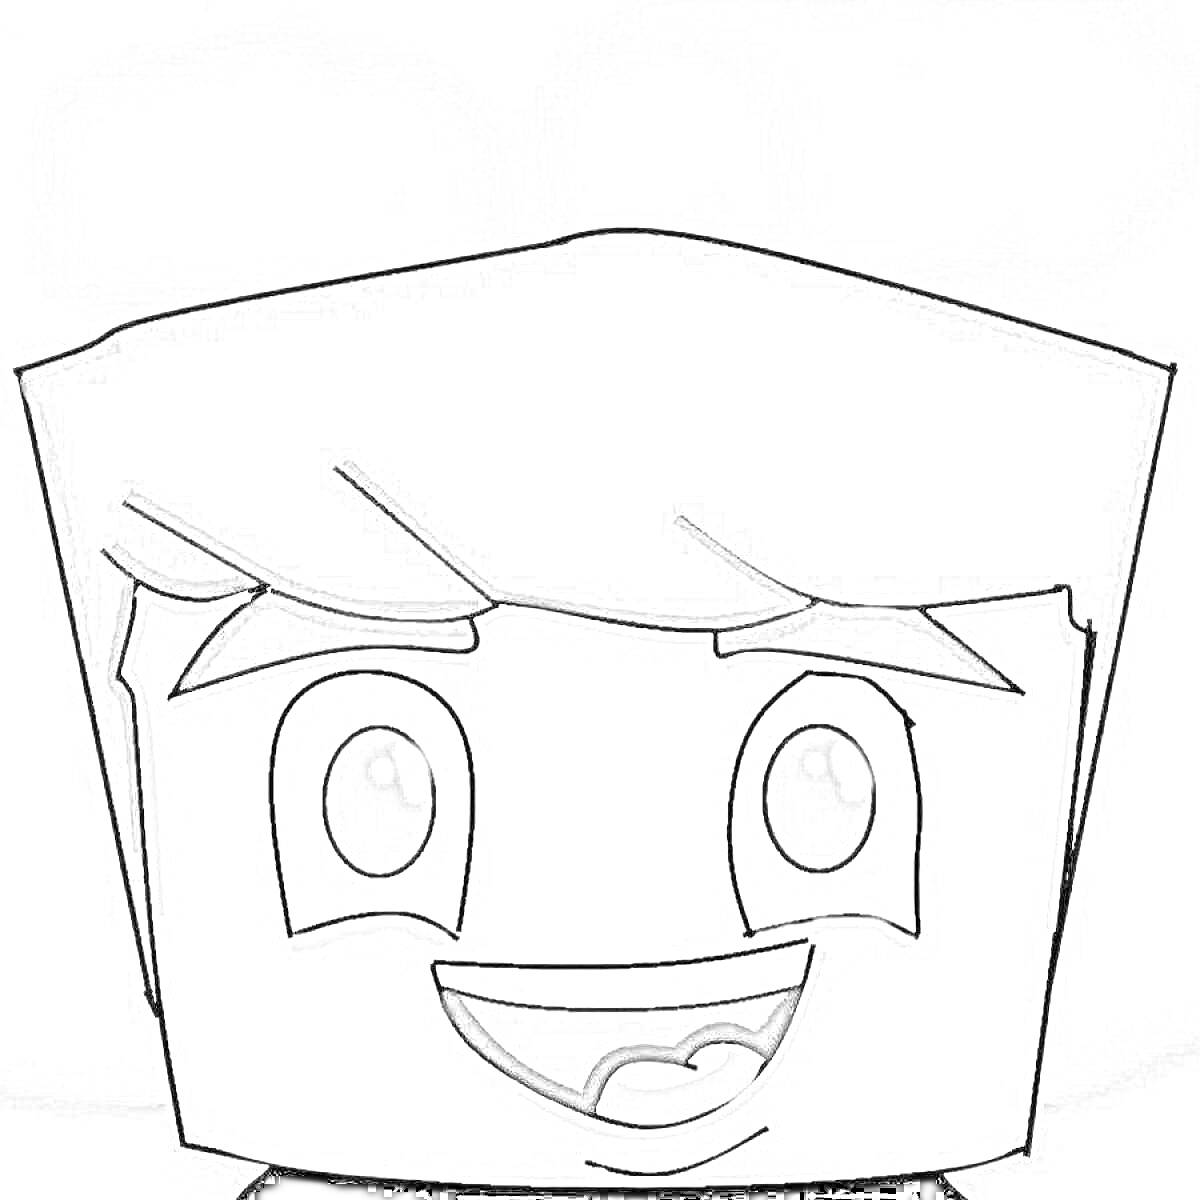 Раскраска Анимированный персонаж с квадратной головой и мечтательной улыбкой на фоне облаков